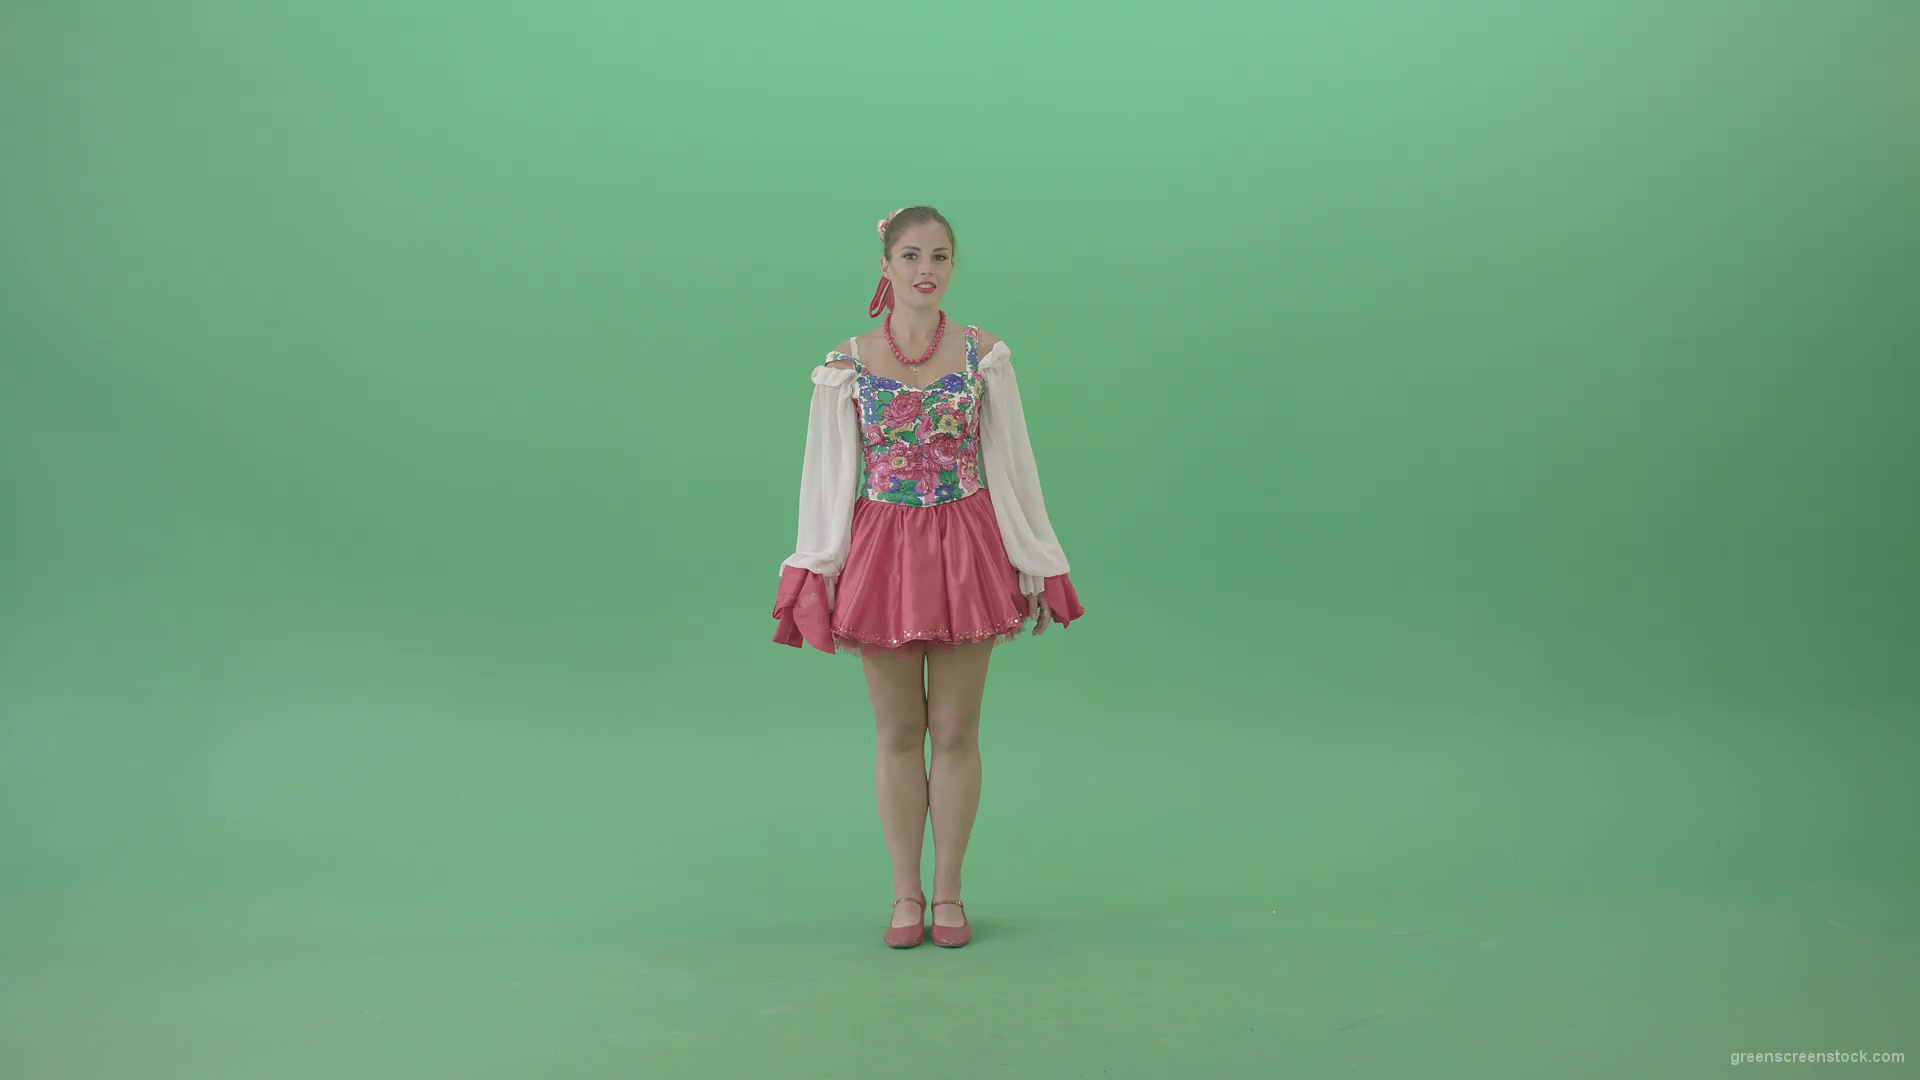 Ukraine-Folk-Girl-dancing-Hopak-dance-in-national-costume-isolated-on-Green-Background-1920_001 Green Screen Stock